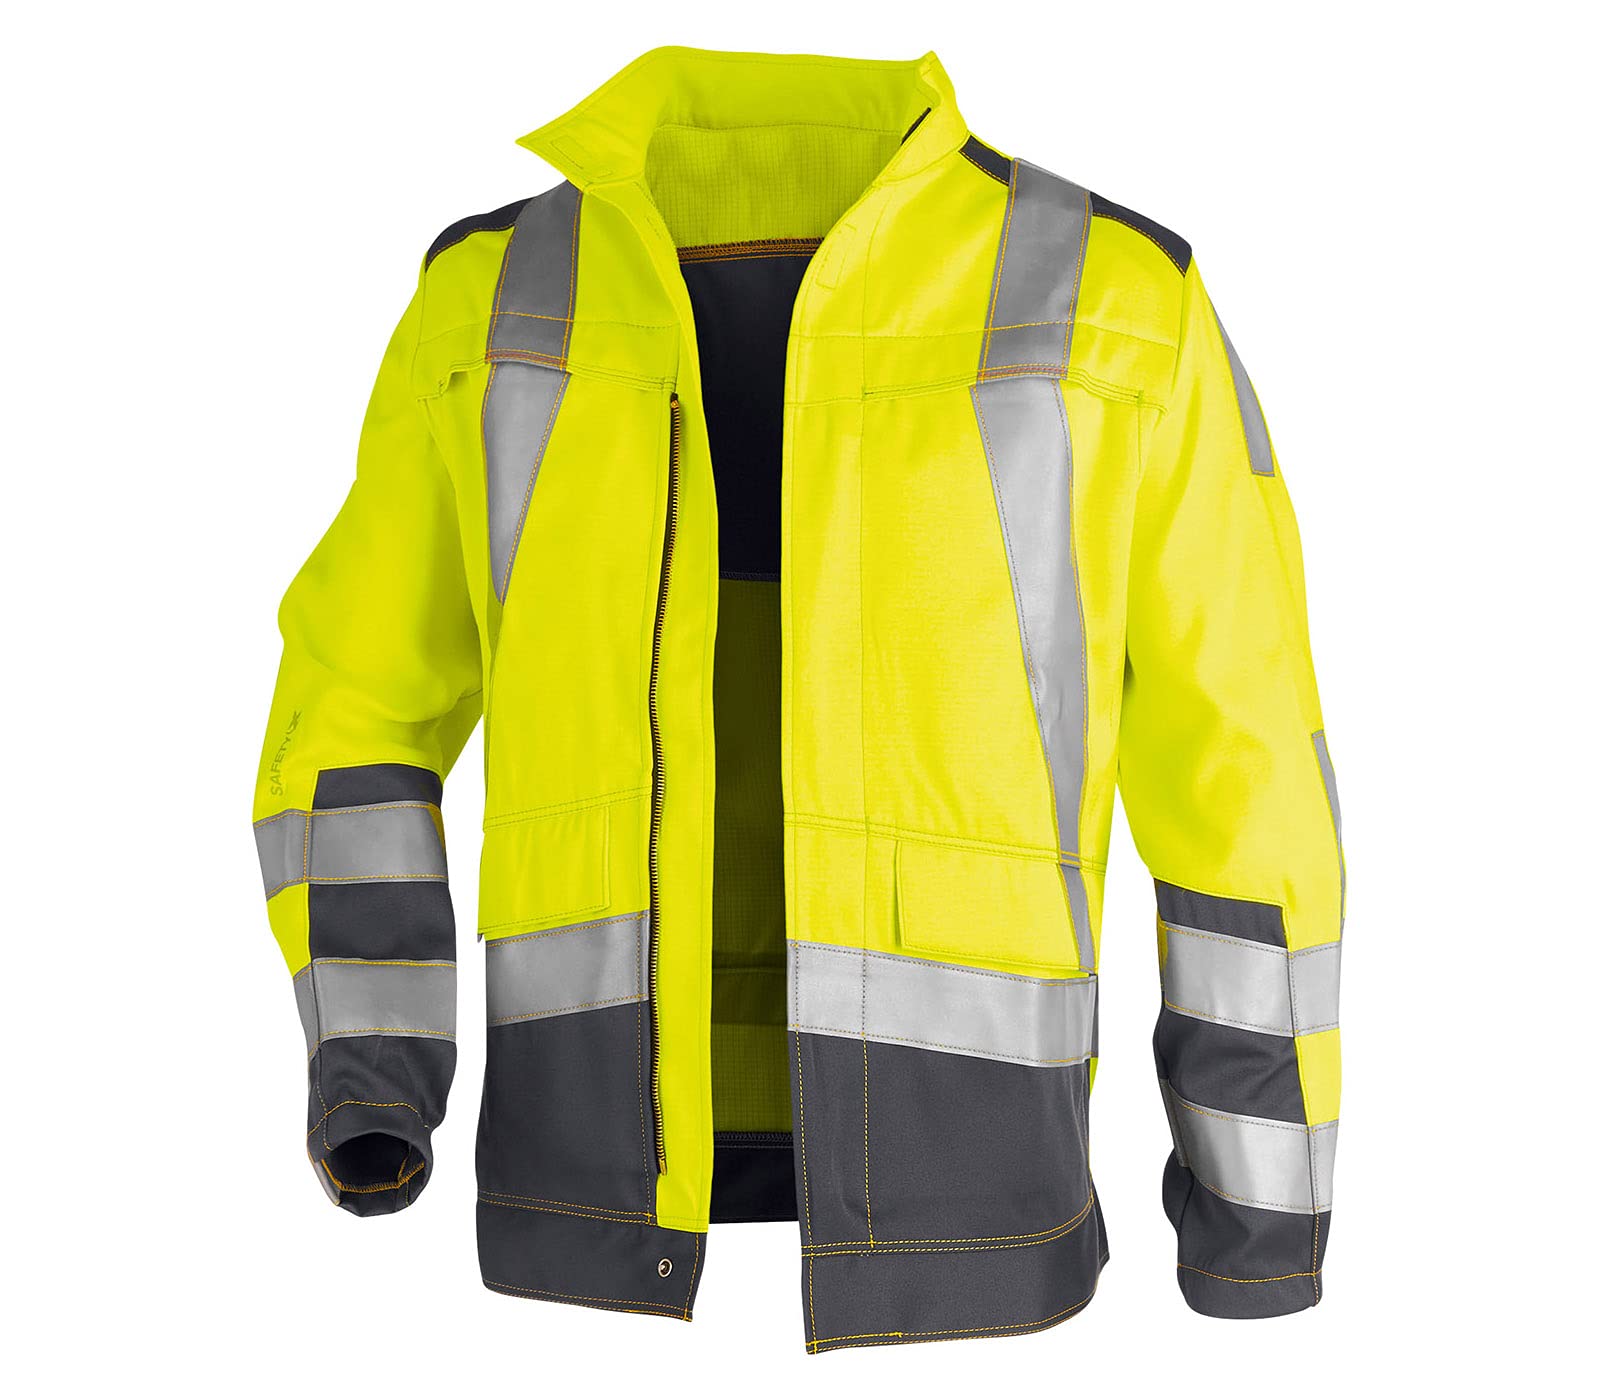 KÜBLER Workwear KÜBLER SAFETY X Arbeitsjacke warngelb, Größe 58, Herren-Arbeitsjacke aus Mischgewebe, zertifizierte Arbeitsjacke